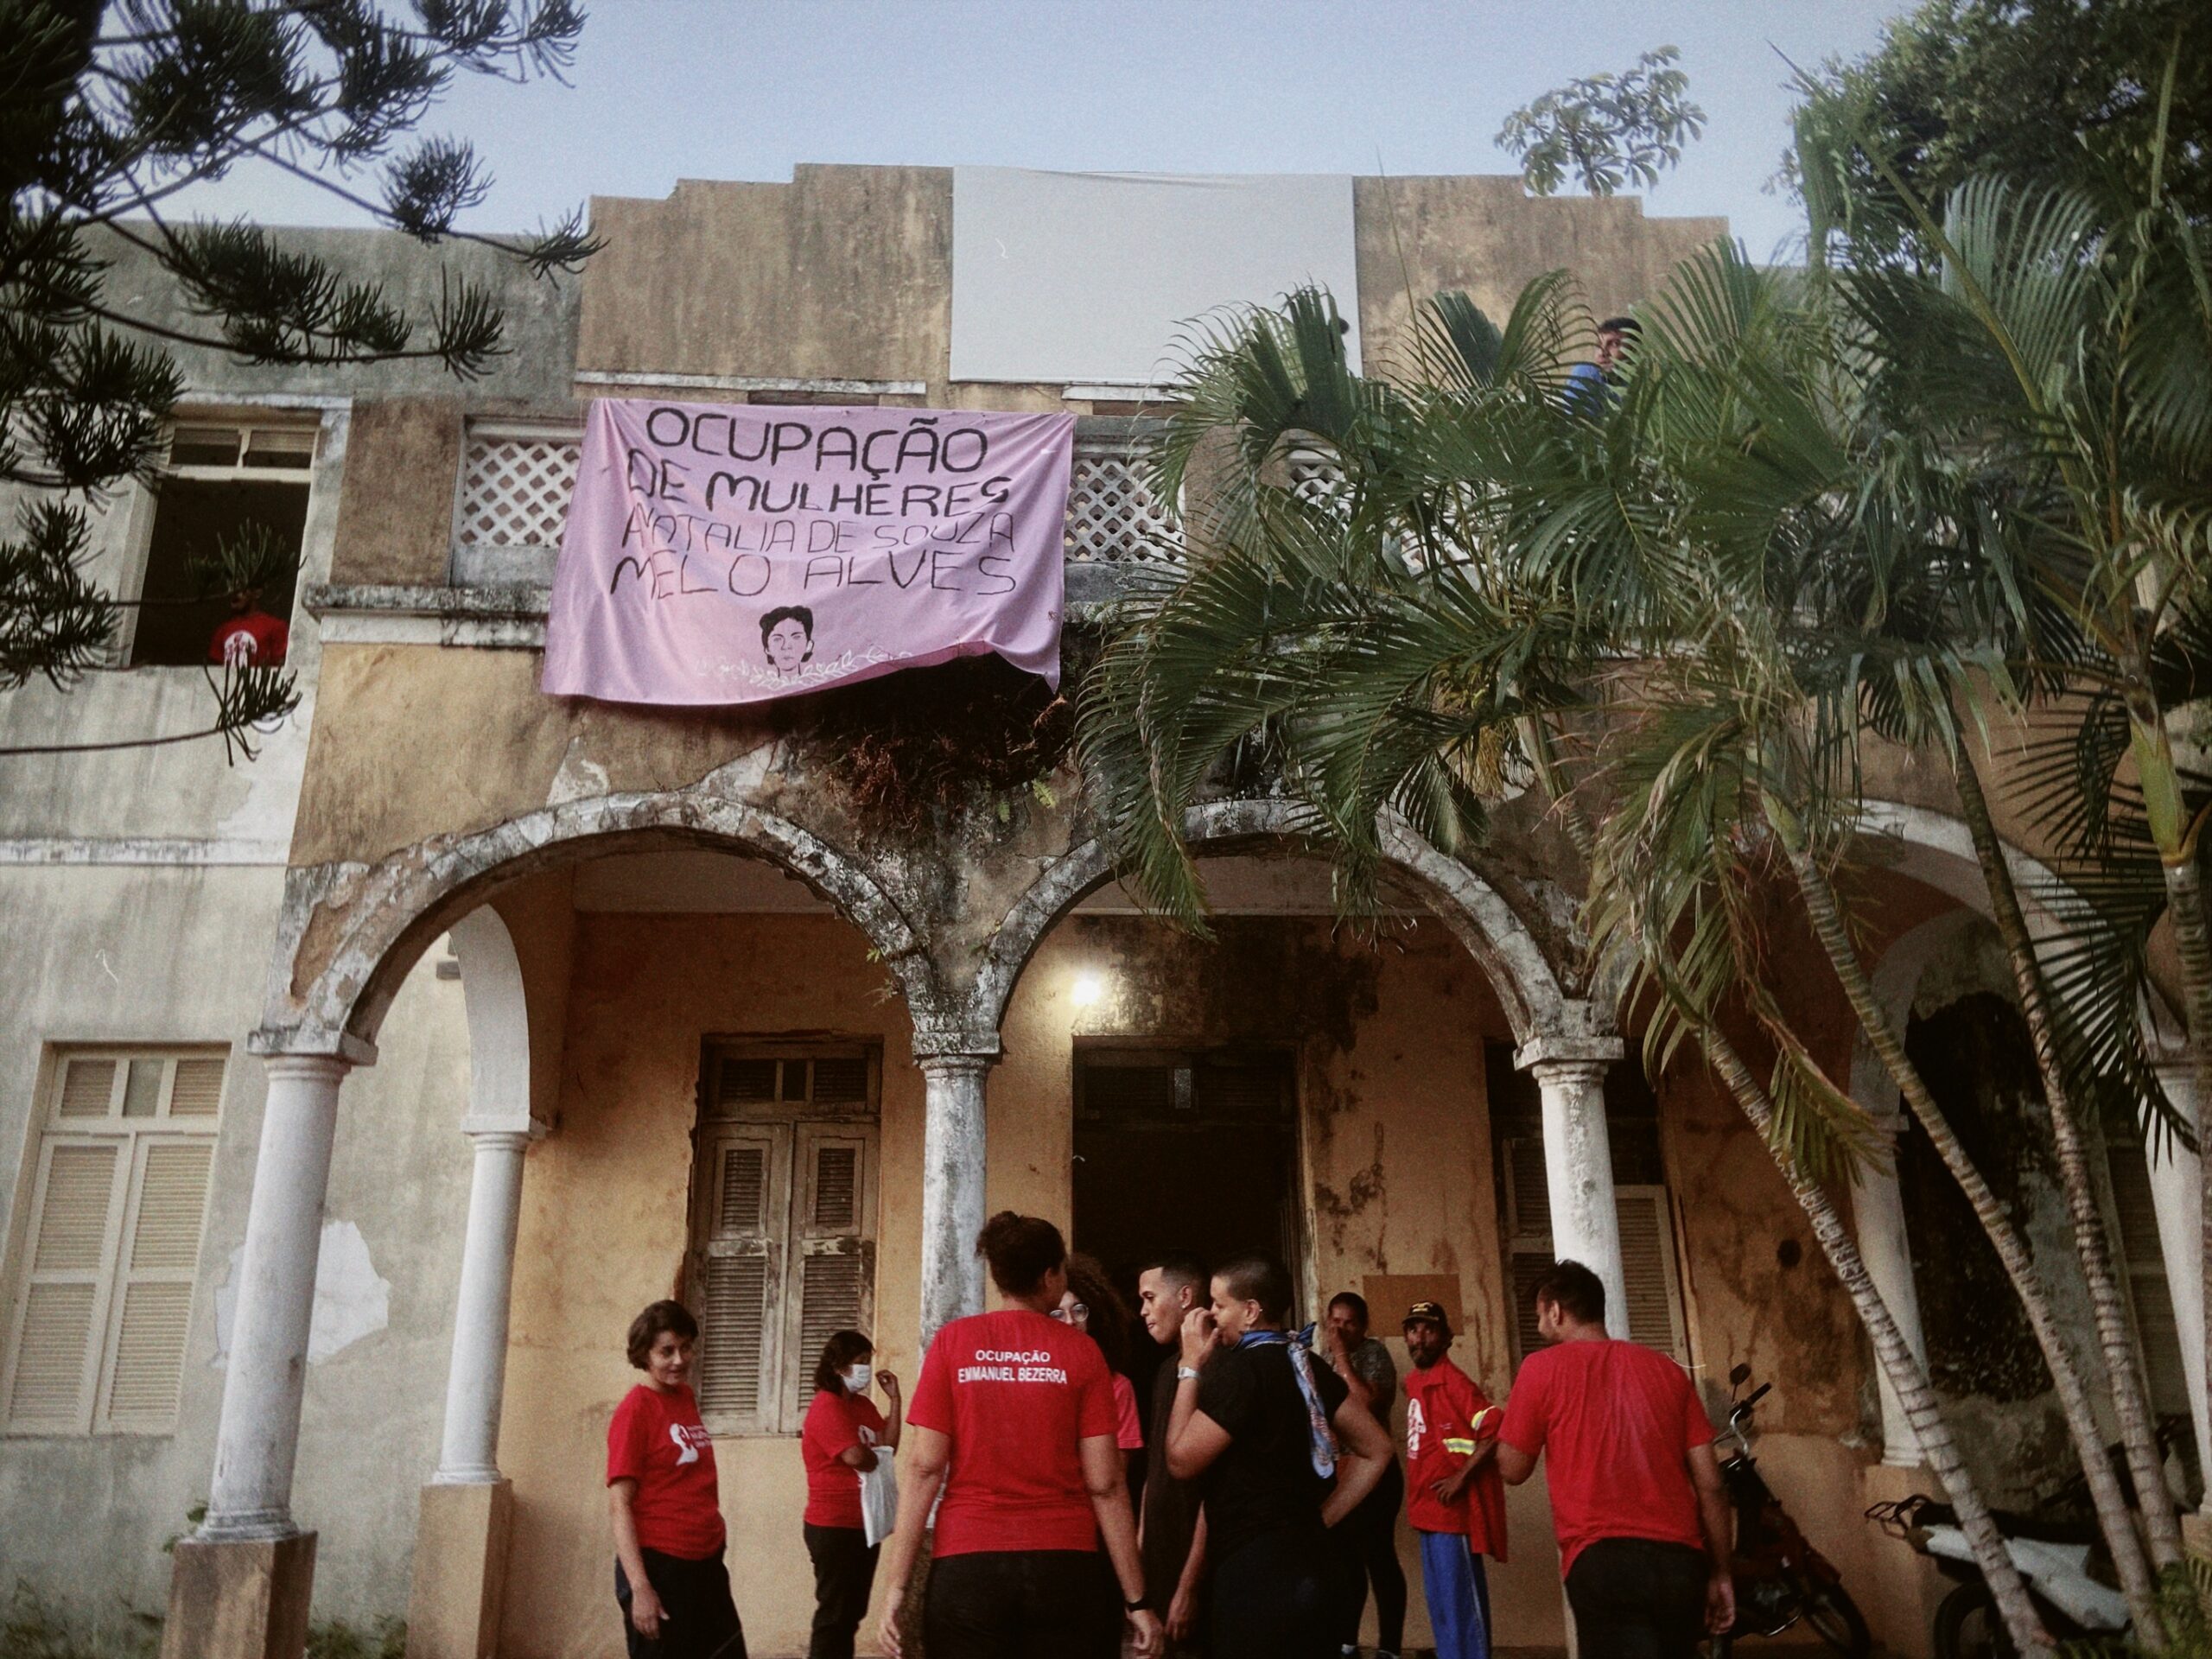 Natal: Ocupação de Mulheres reivindica direito à vida e à moradia